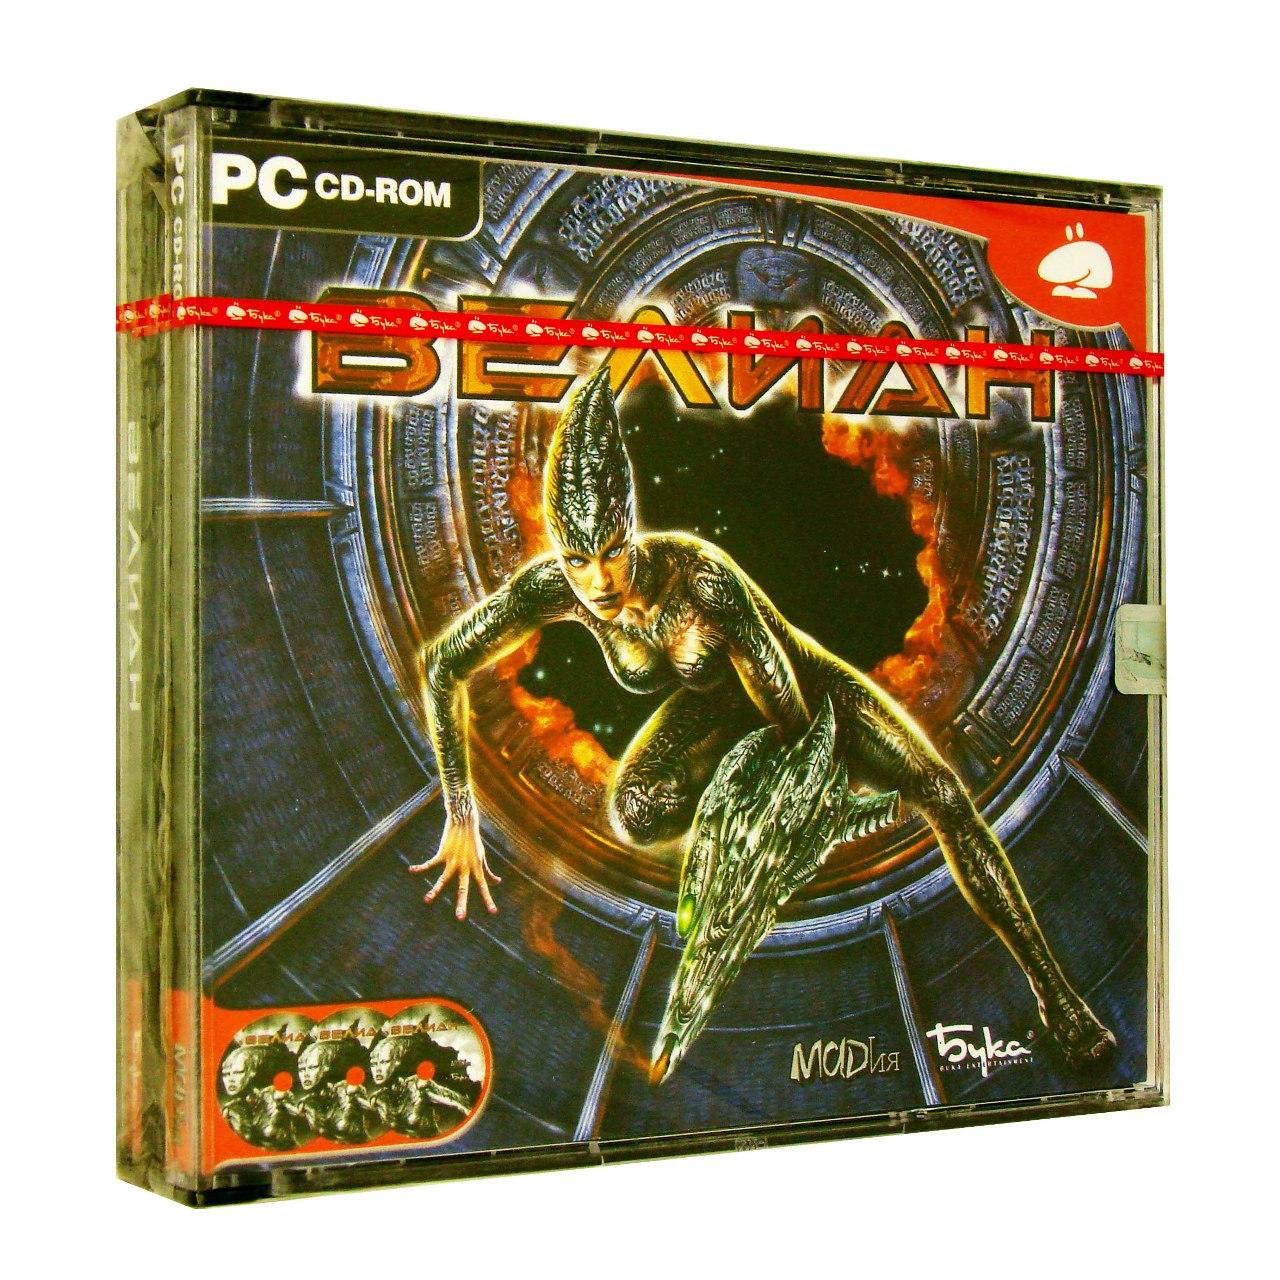 Компьютерный компакт-диск Велиан (ПК), фирма "Бука", 3CD